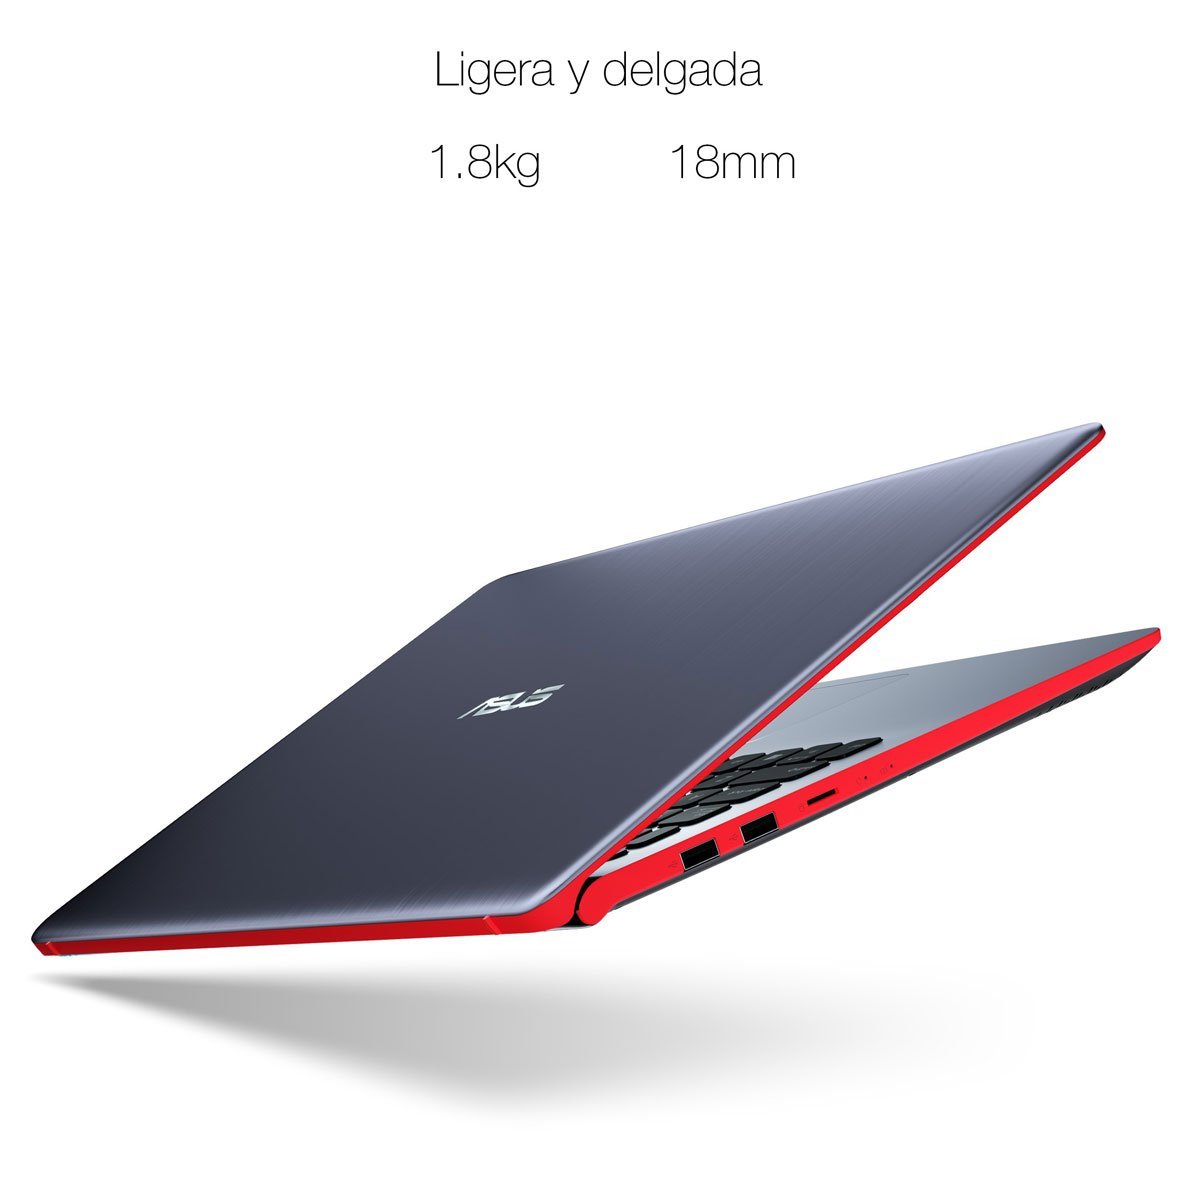 Laptop Asus Vivobook S530Ua-Br311T